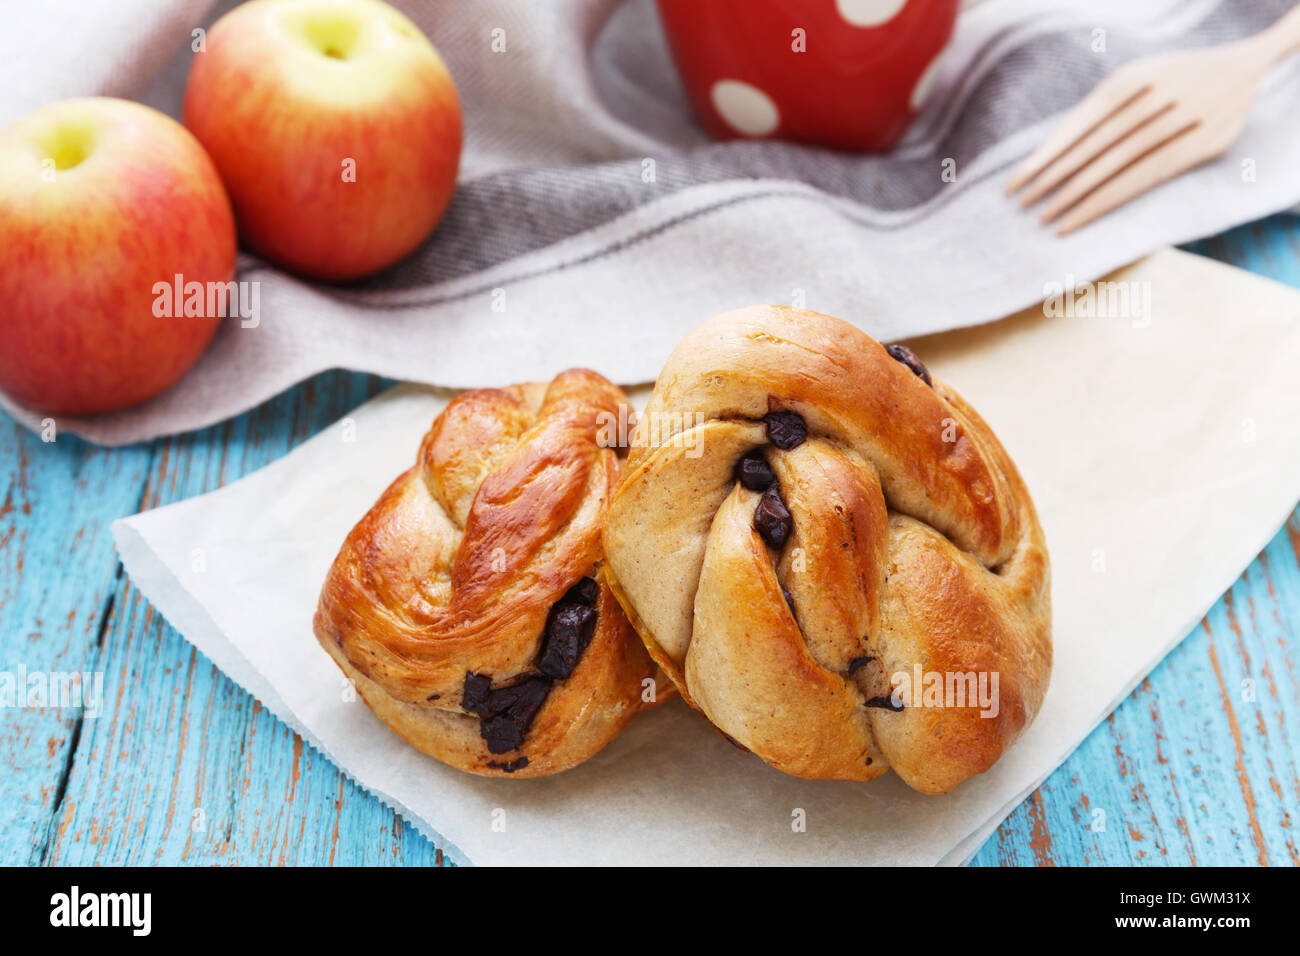 Frühstück mit Brot, Apfel und Kaffee Becher Stockfoto